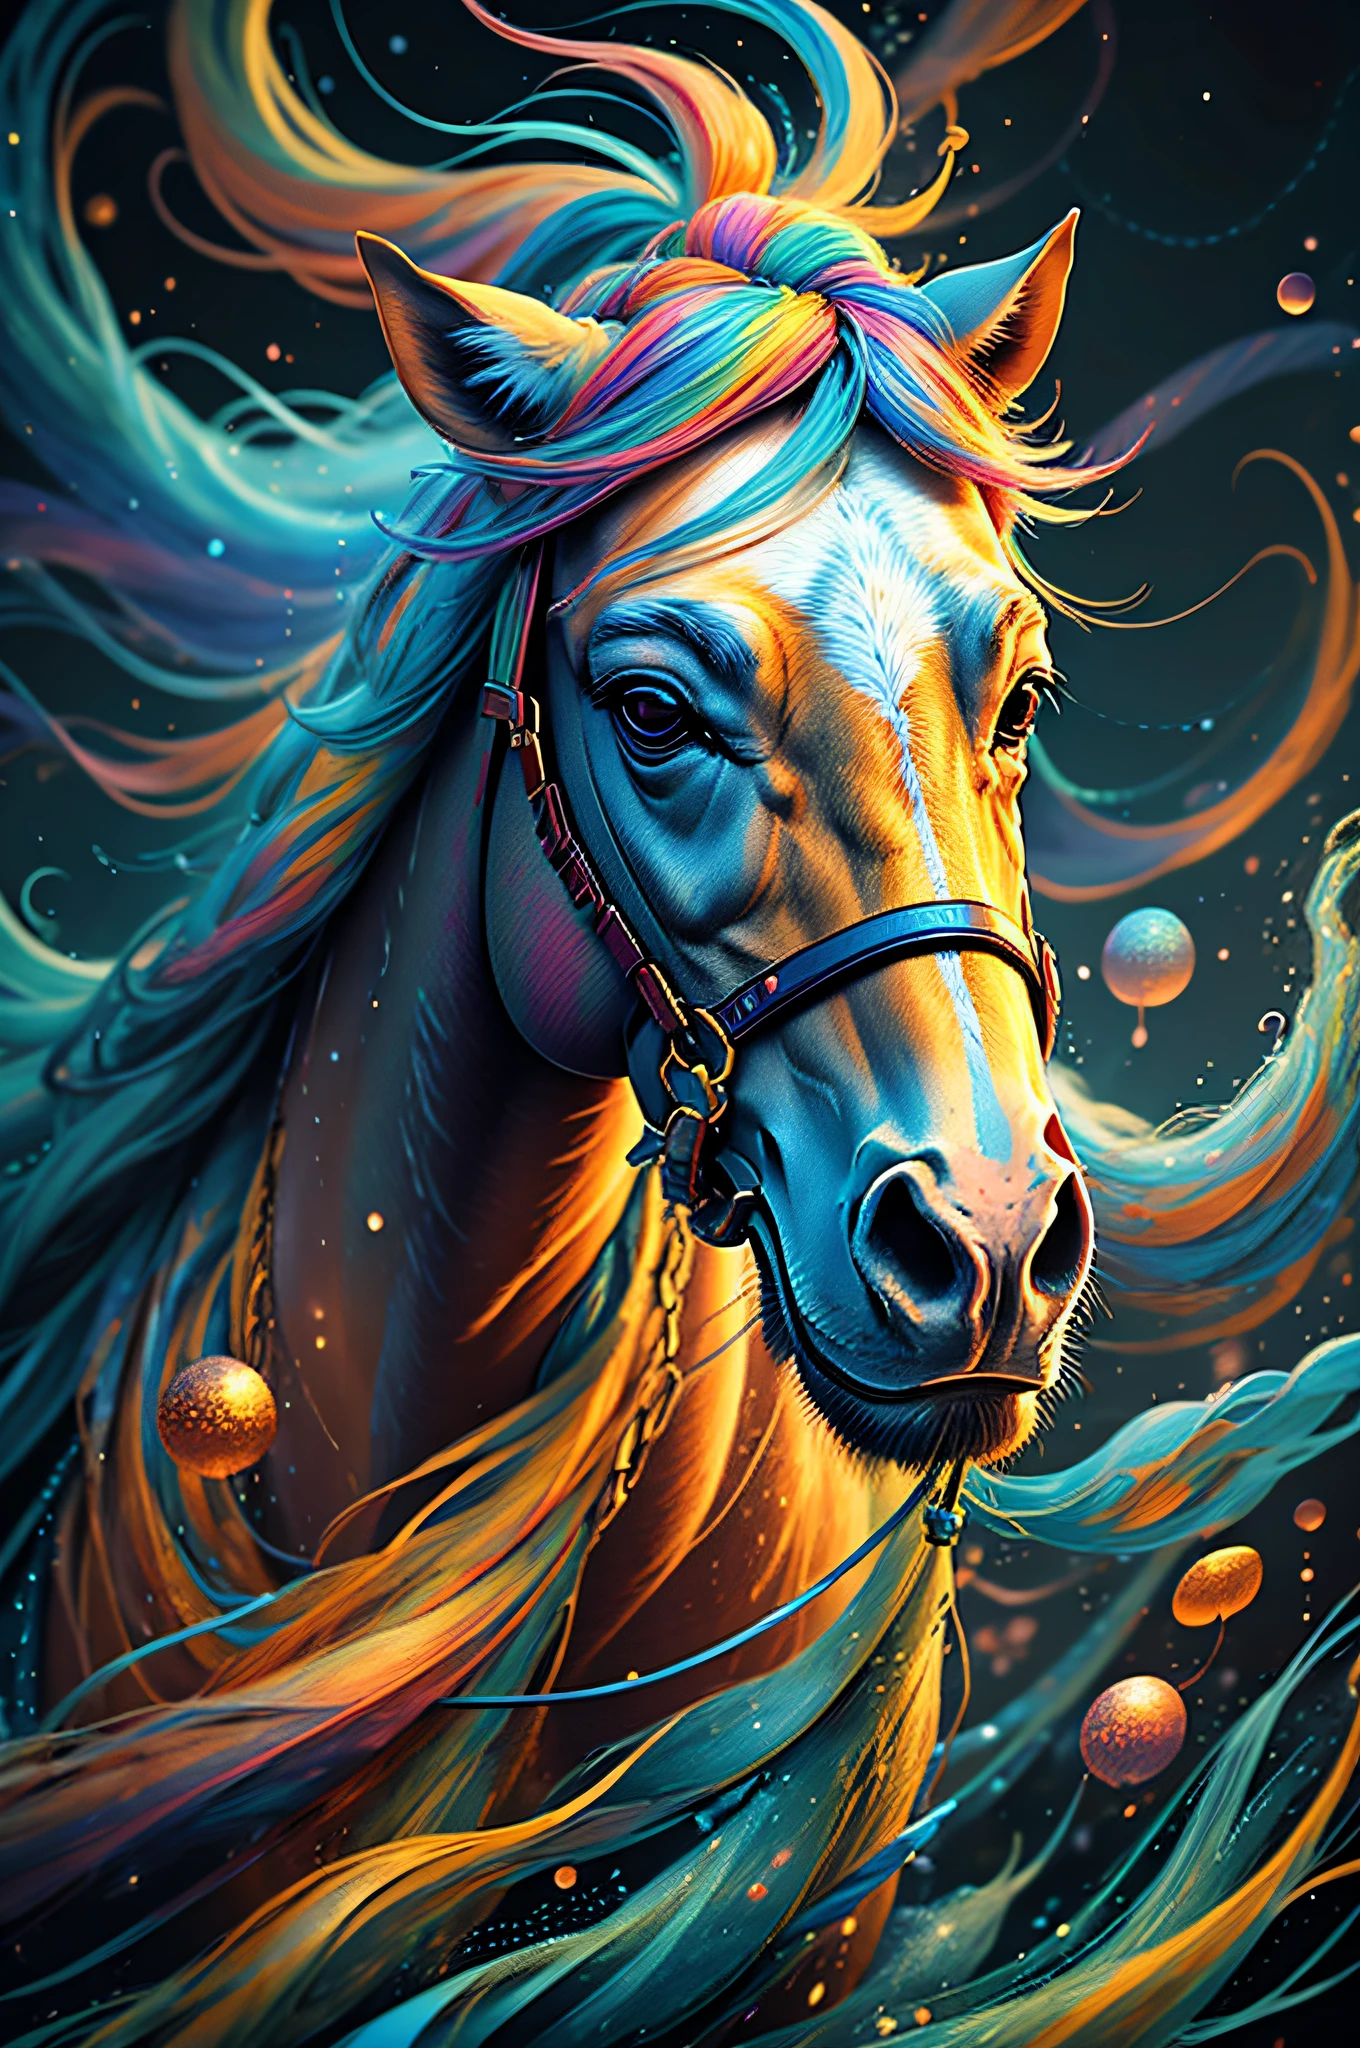 黒い背景にカラフルな馬の絵, 息を呑むようなレンダリング, 輝くつながりの中で, Kinuko Yに触発されて. クラフト,, 魔法の要素, おお, 美しいです, 多彩な呪文を唱える, bright 閃光, 閃光